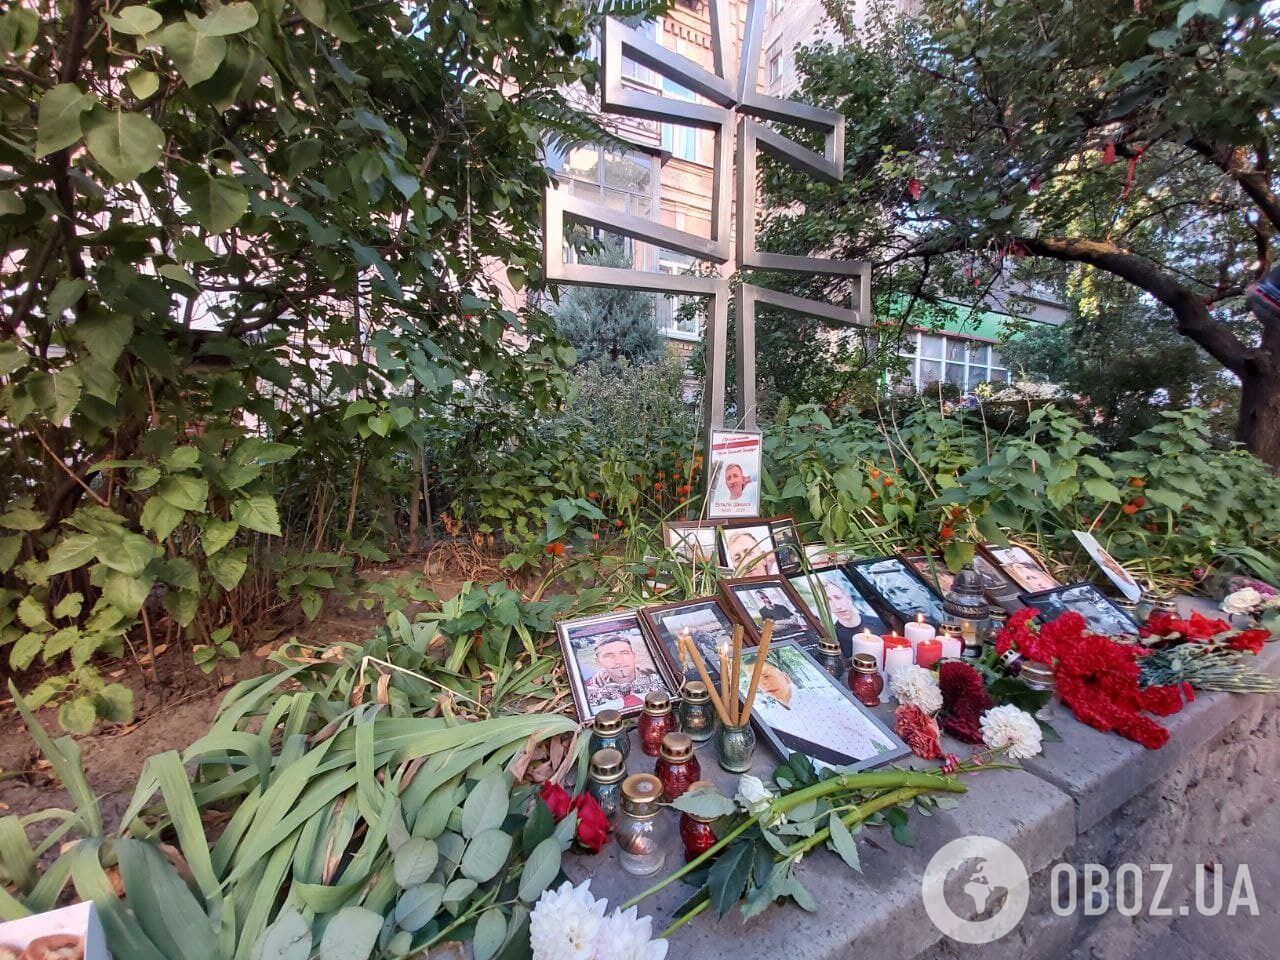 Участники акции почтили память погибшего Шишова.